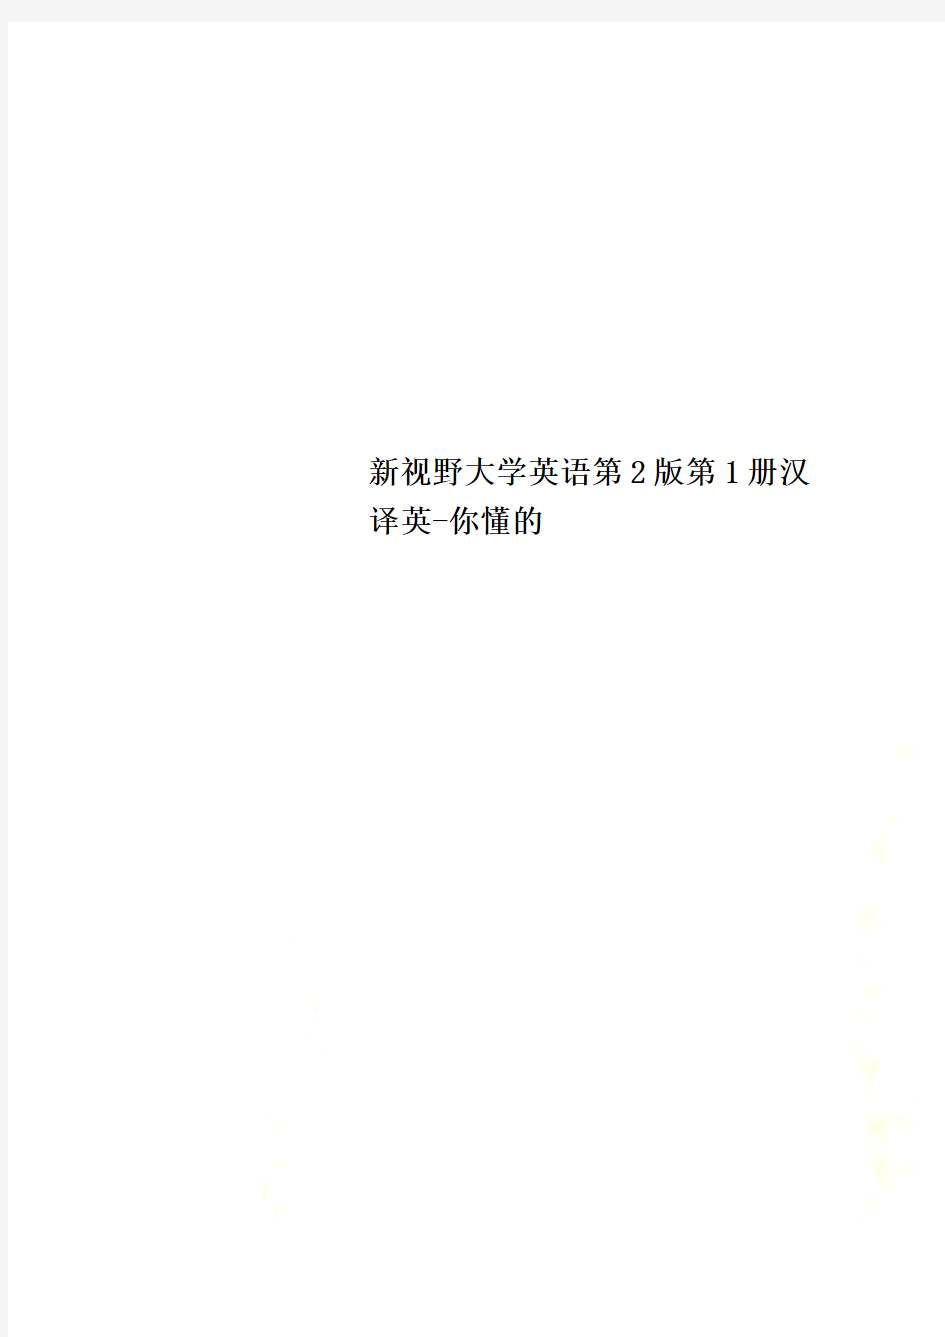 新视野大学英语第2版第1册汉译英-你懂的